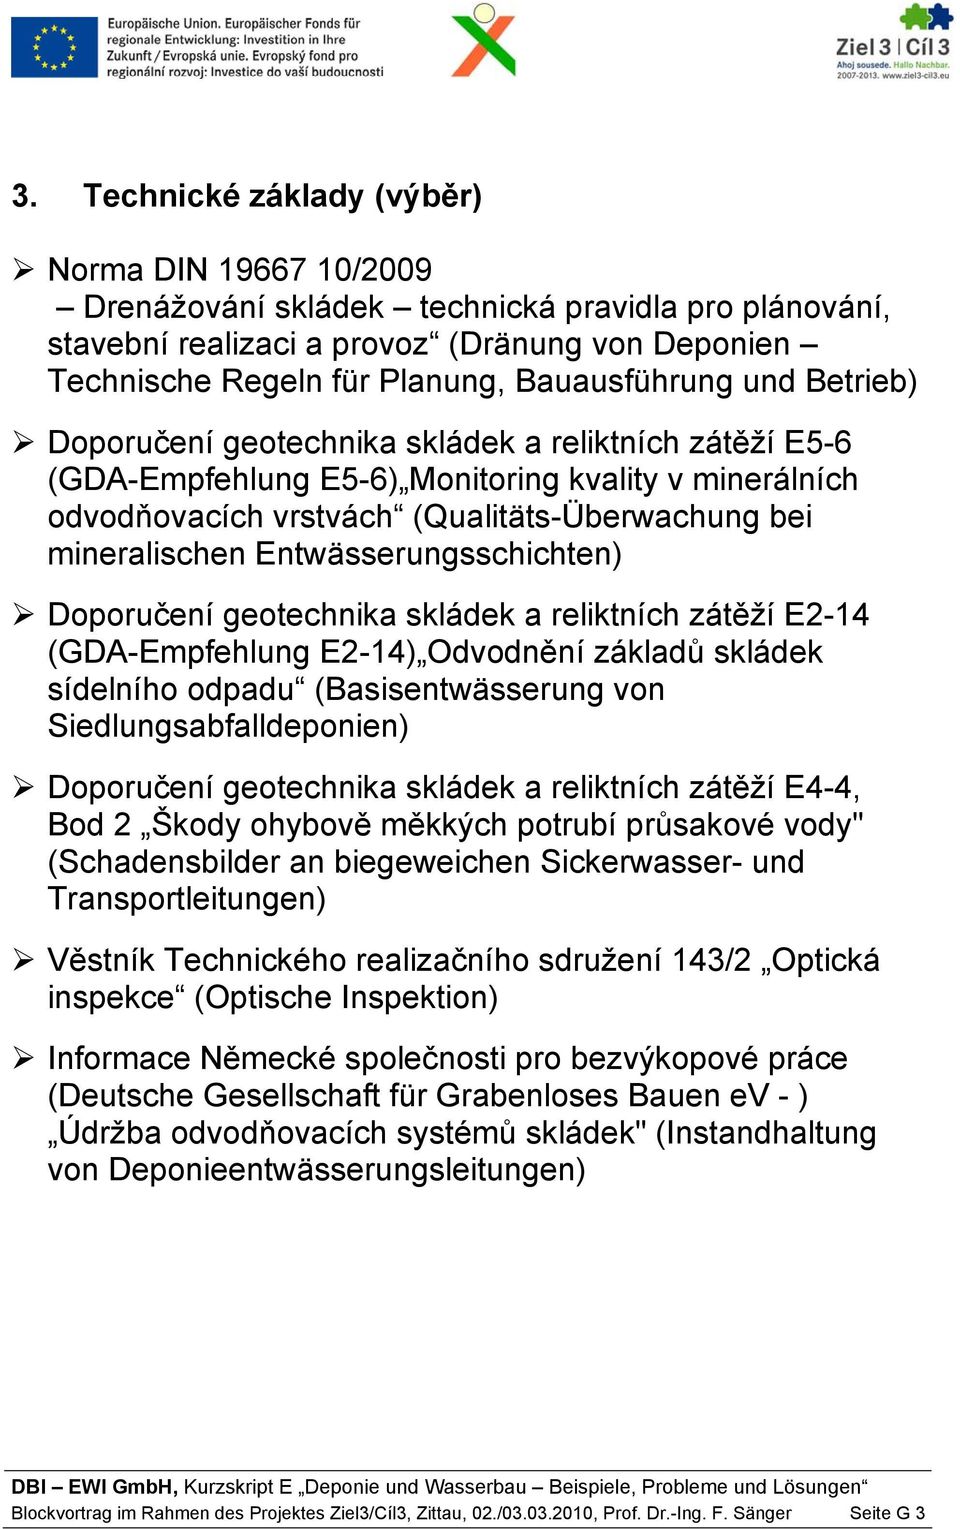 mineralischen Entwässerungsschichten) Doporučení geotechnika skládek a reliktních zátěží E2-14 (GDA-Empfehlung E2-14) Odvodnění základů skládek sídelního odpadu (Basisentwässerung von